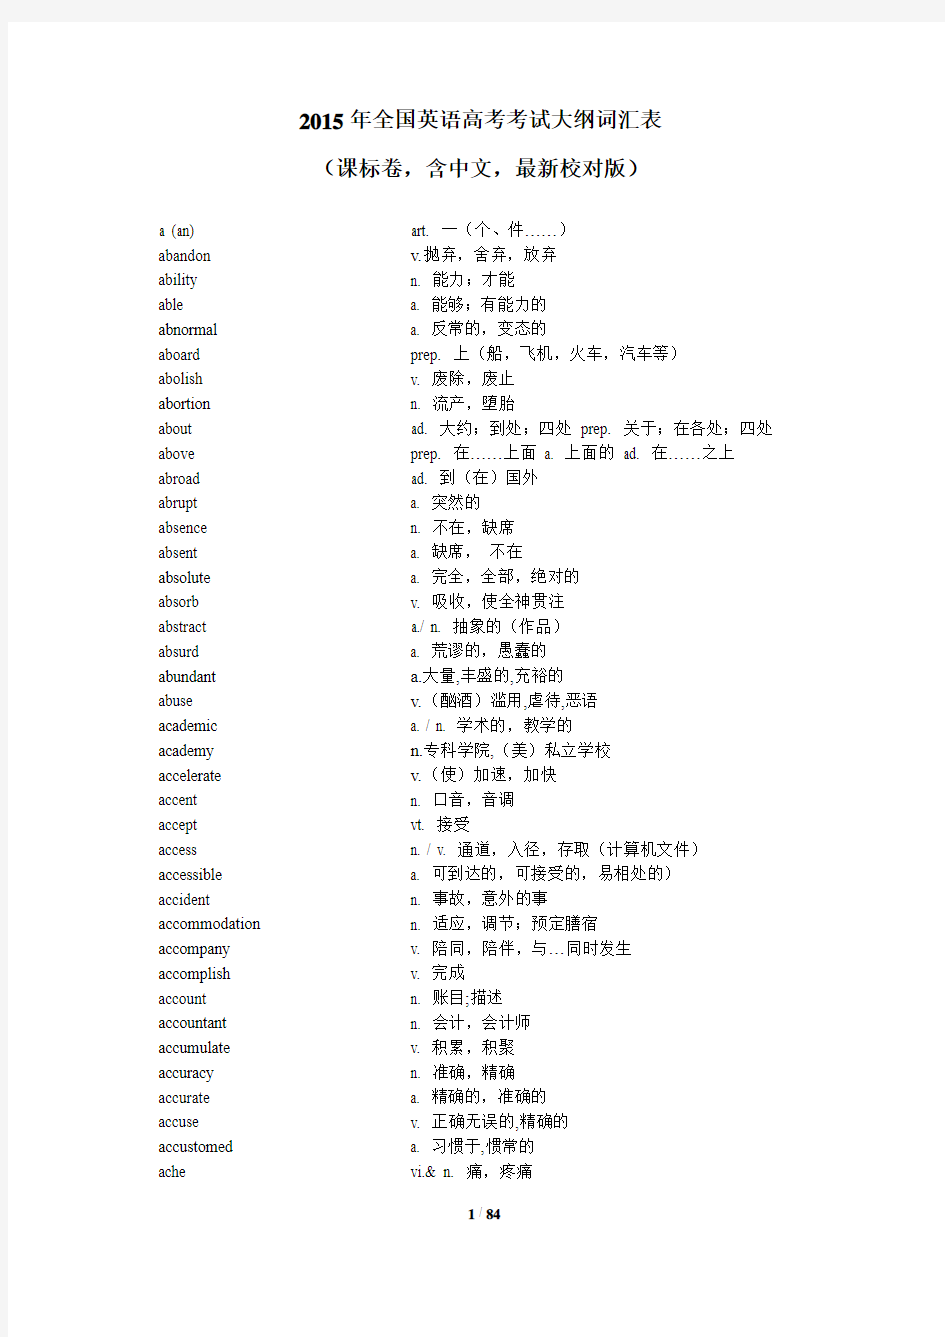 2015全国高考考纲词汇表(附中文)